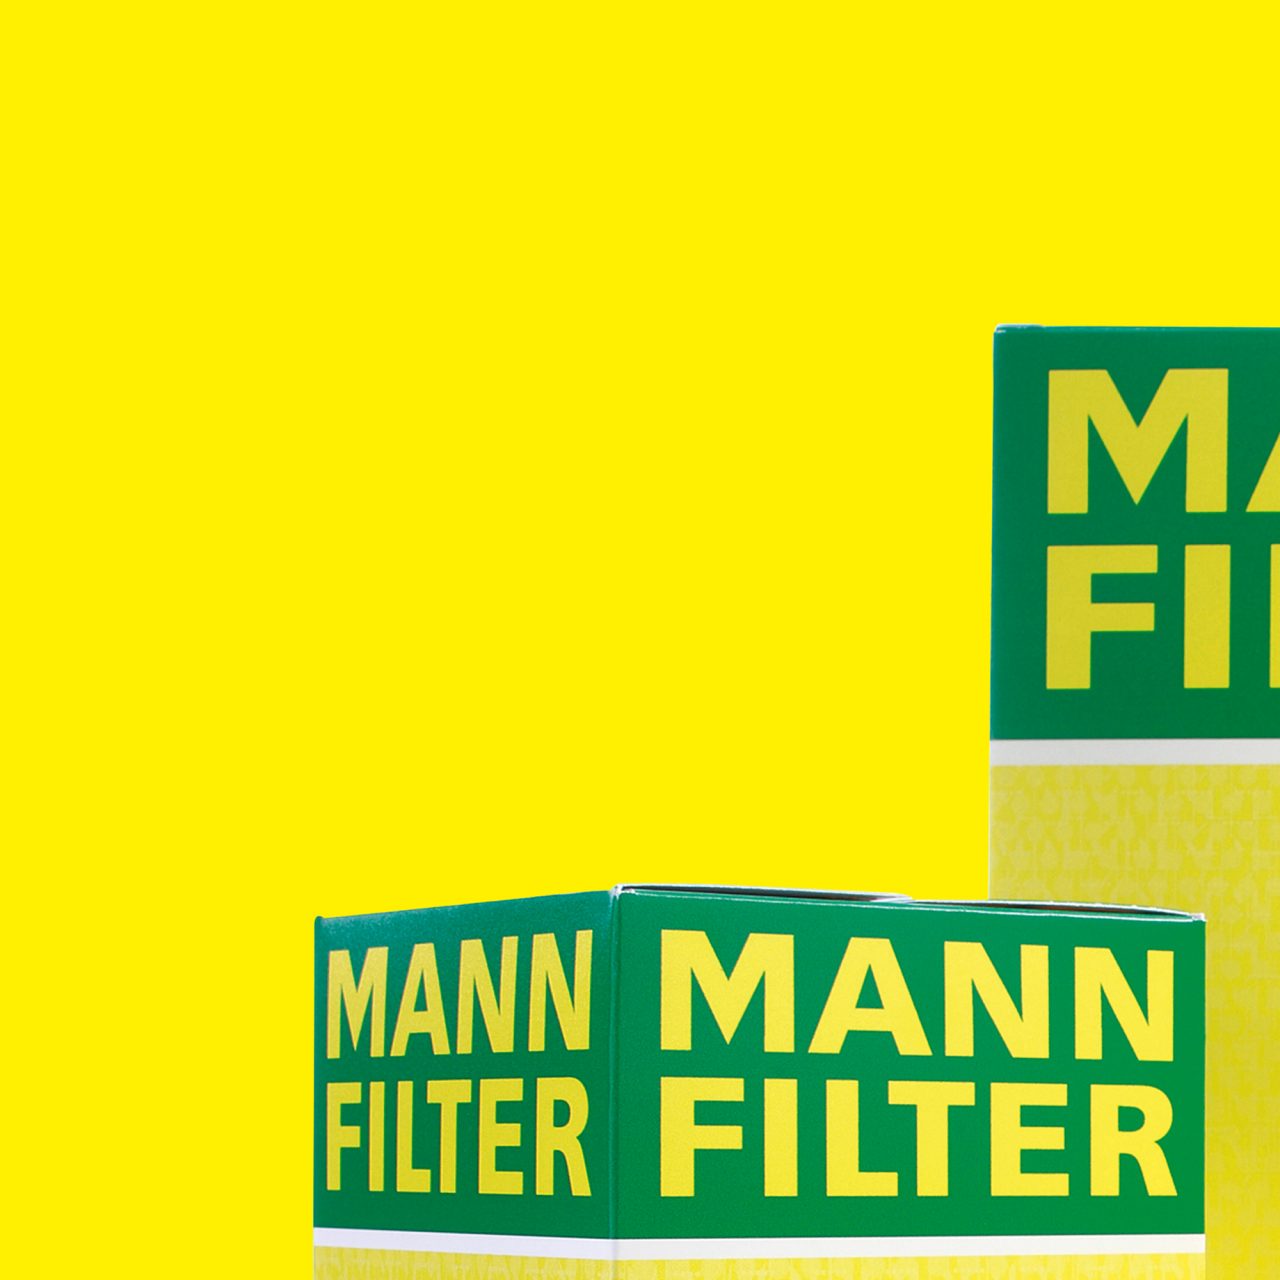 MANN-FILTER award part 1